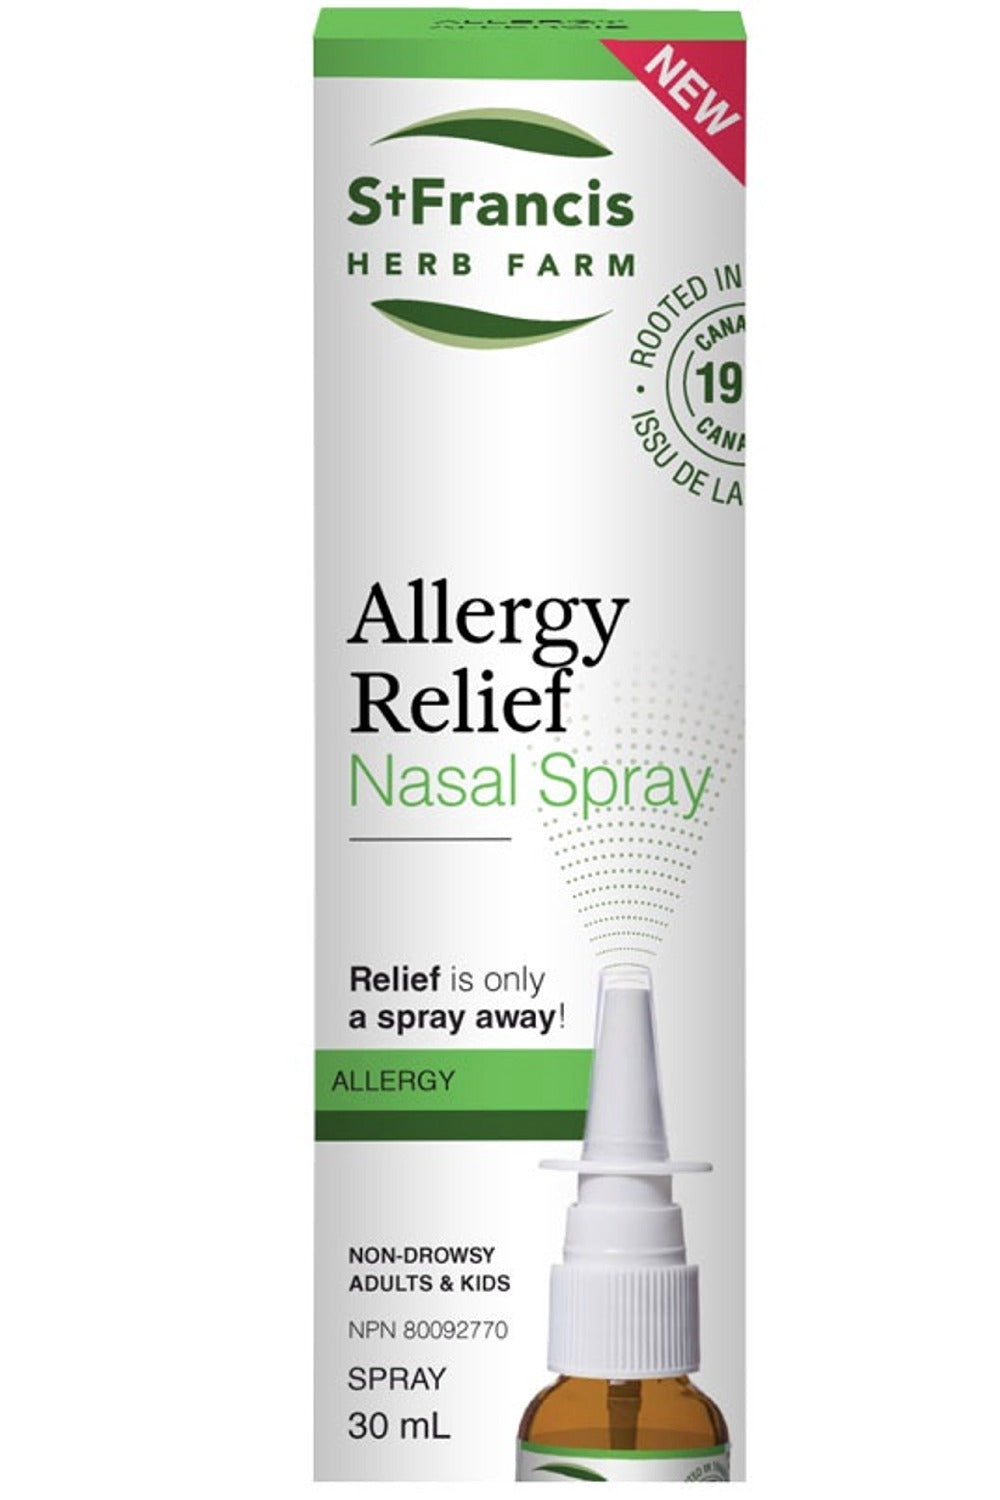 ST FRANCIS HERB FARM Allergy Relief Nasal Spray (30 ml)